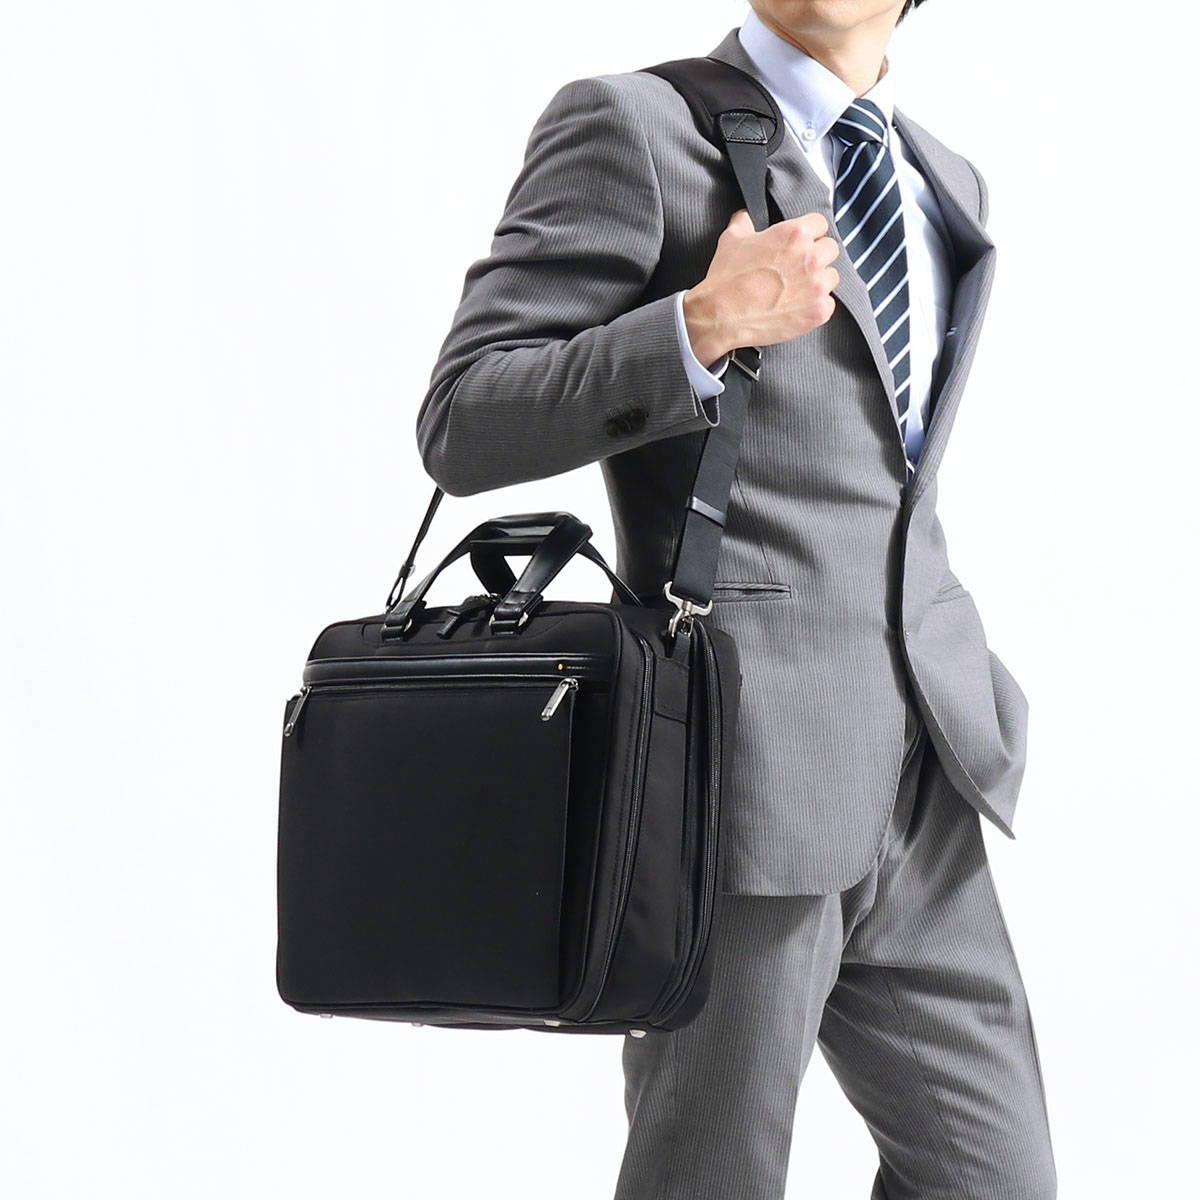 仕事ができる男のビジネスバッグは、エースジーンのブリーフケース EVL-3.5